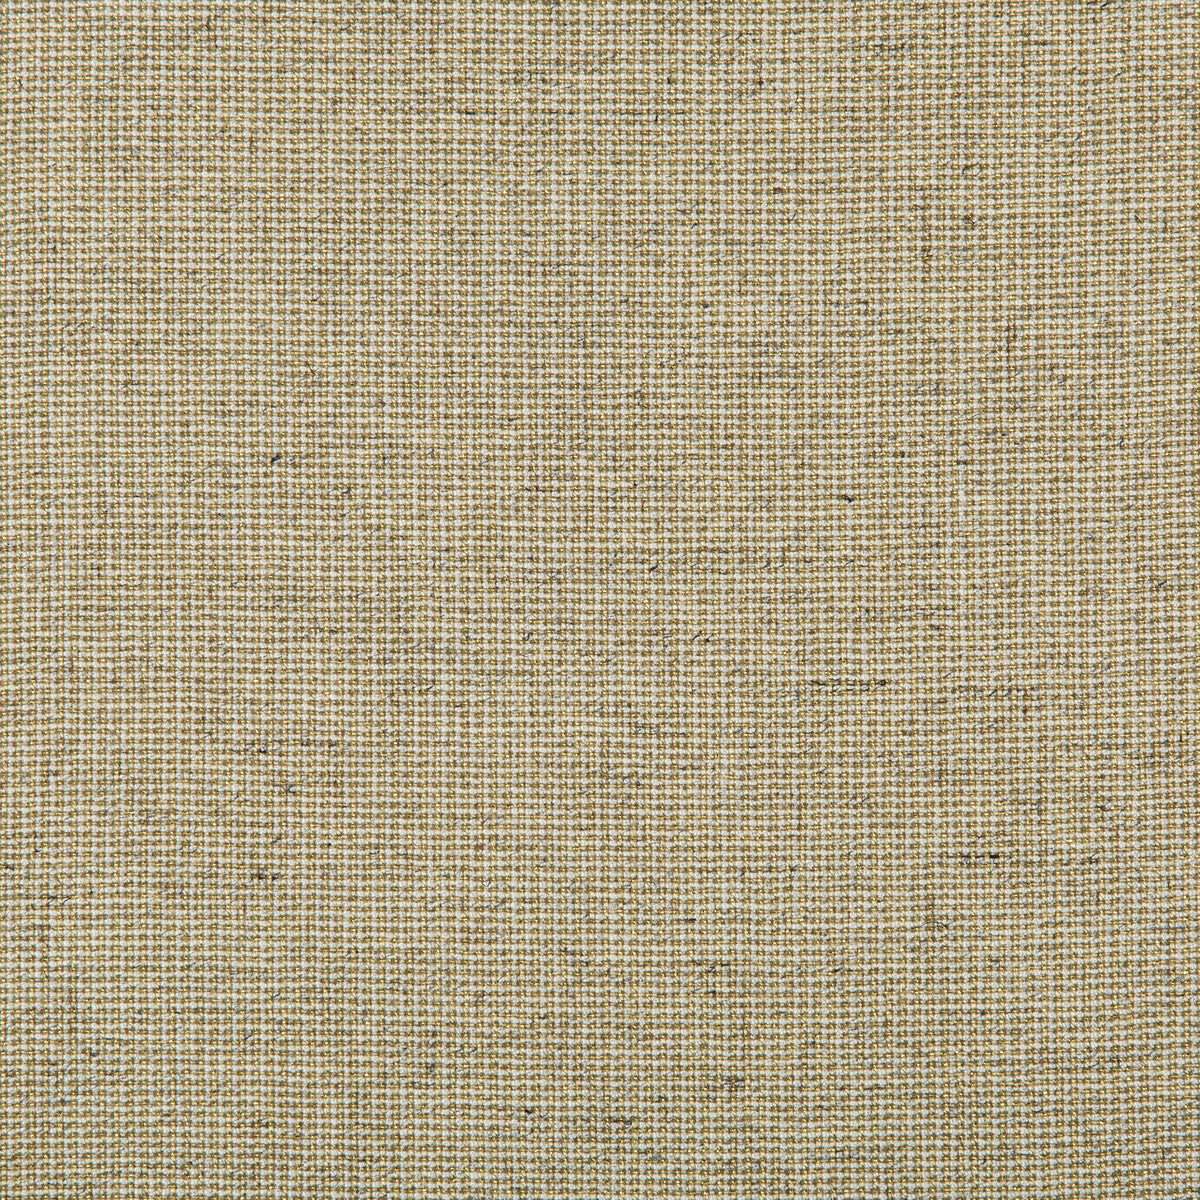 Kravet Basics fabric in 35785-340 color - pattern 35785.340.0 - by Kravet Basics